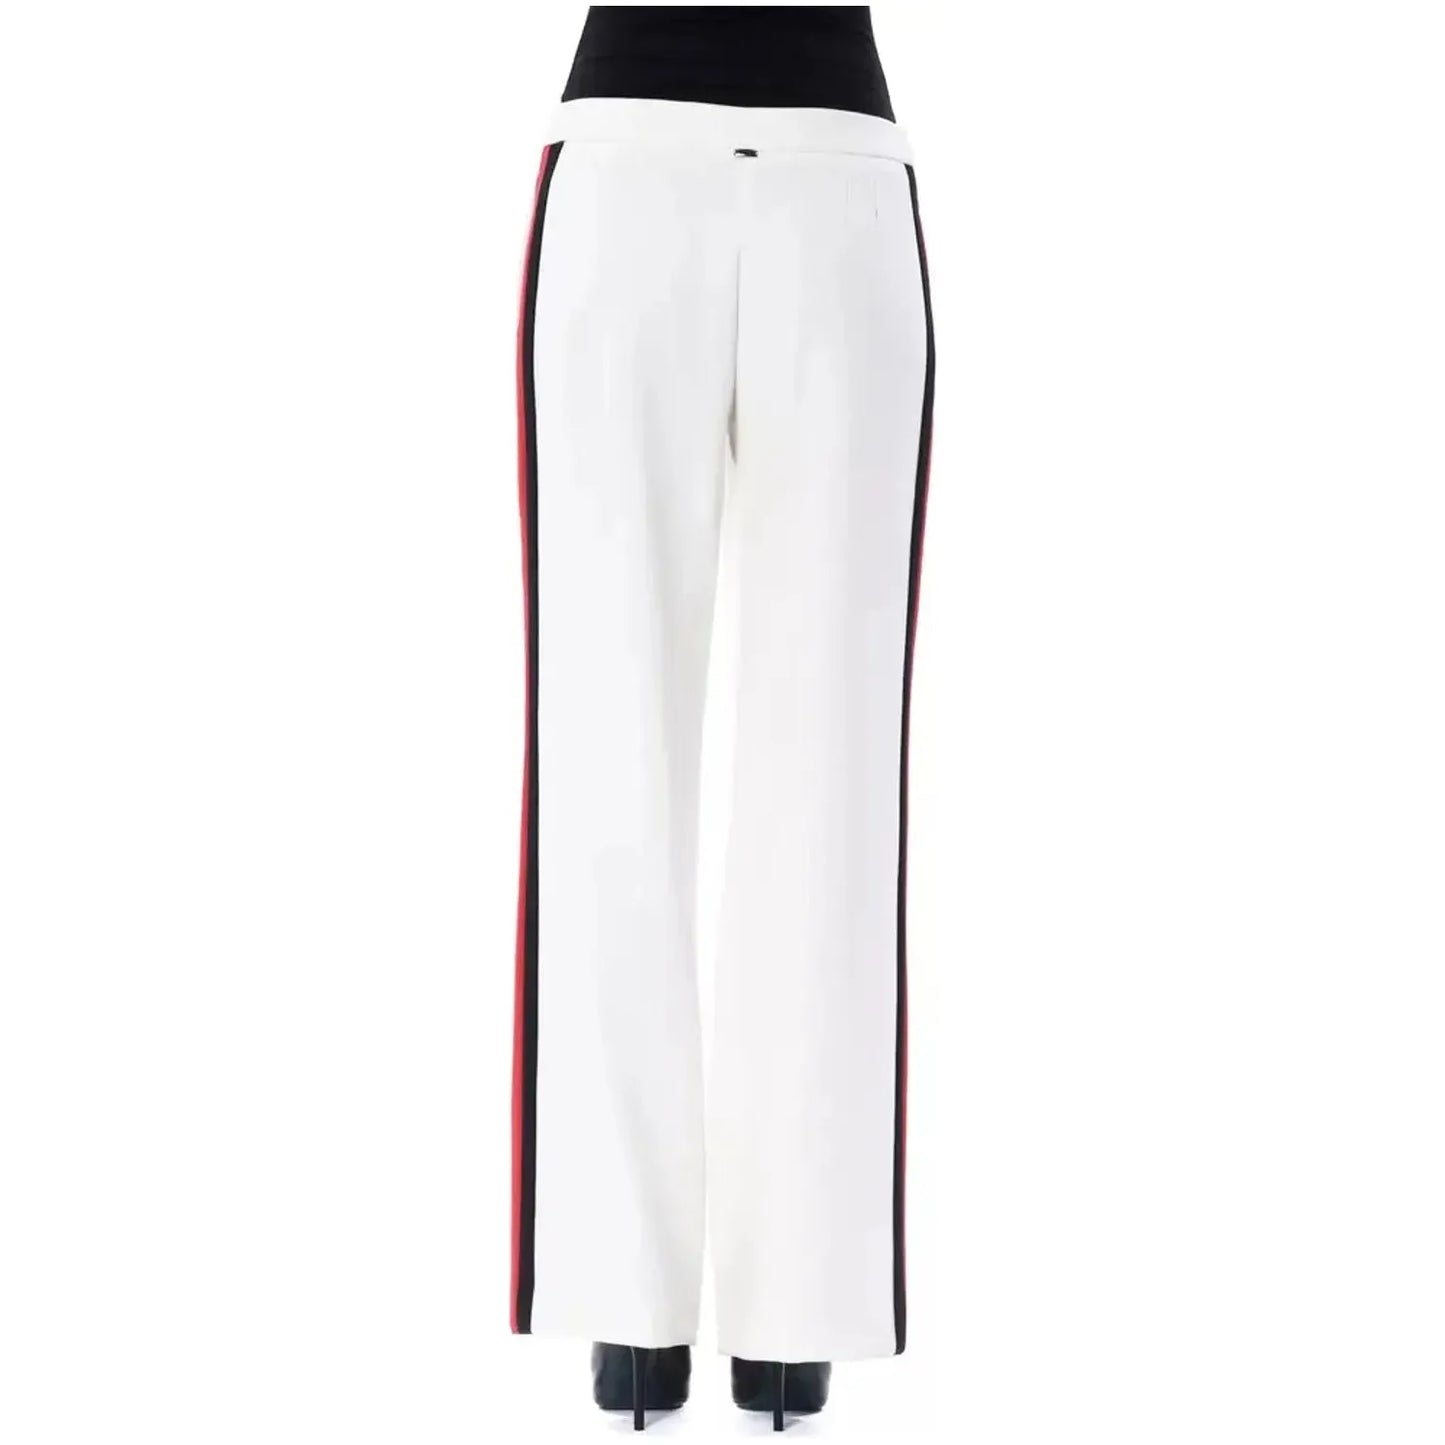 BYBLOSElegant White Stripe-Detailed TrousersMcRichard Designer Brands£159.00